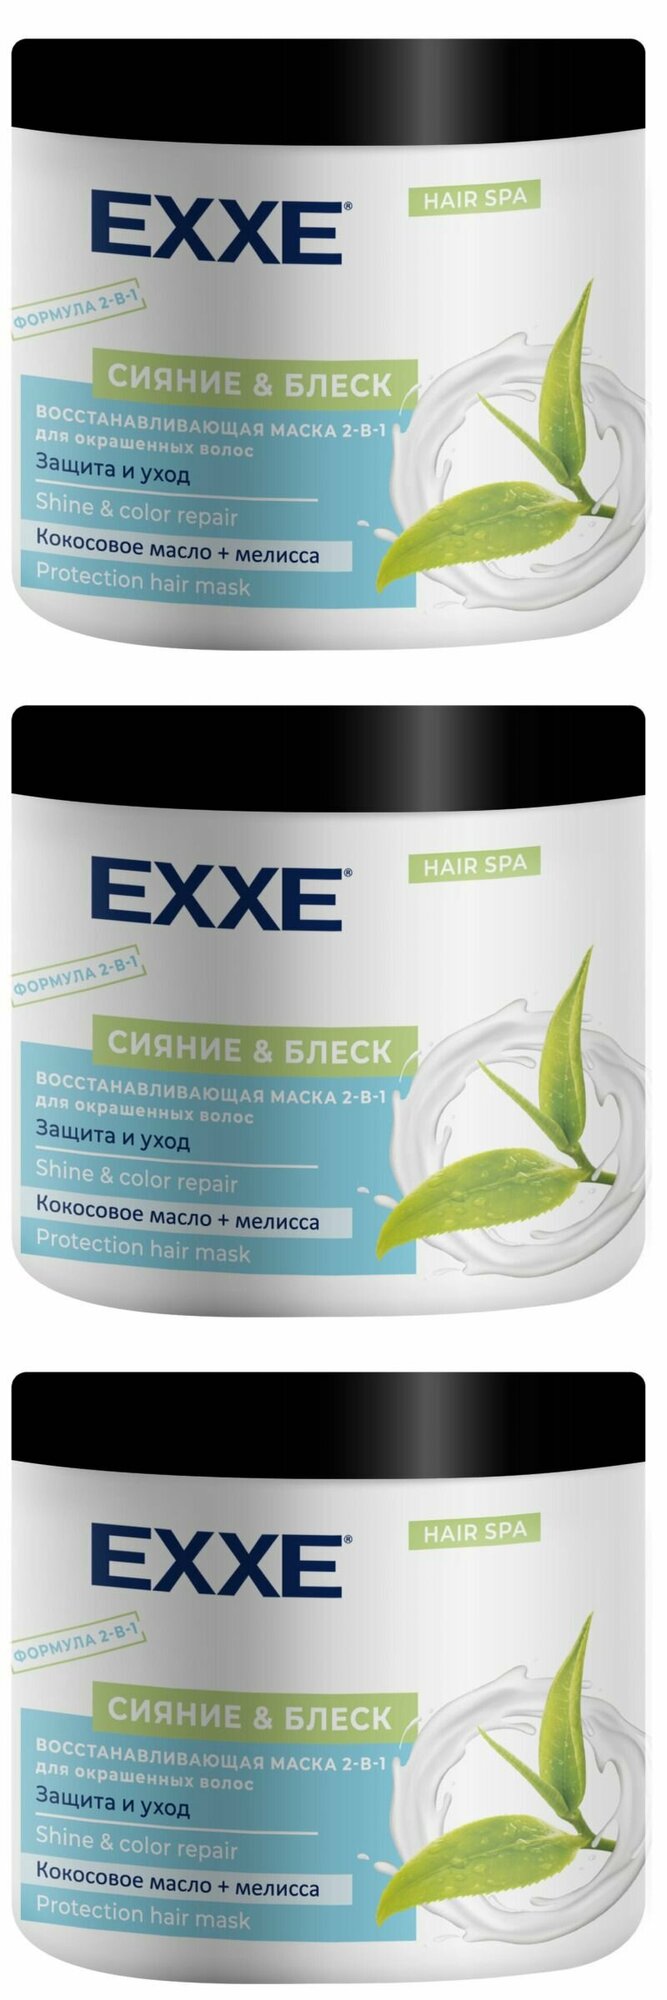 EXXE Маска для волос 2-в-1 Сияние и блеск, восстанавливающая, для окрашенных волос, 500 мл, 3 шт.